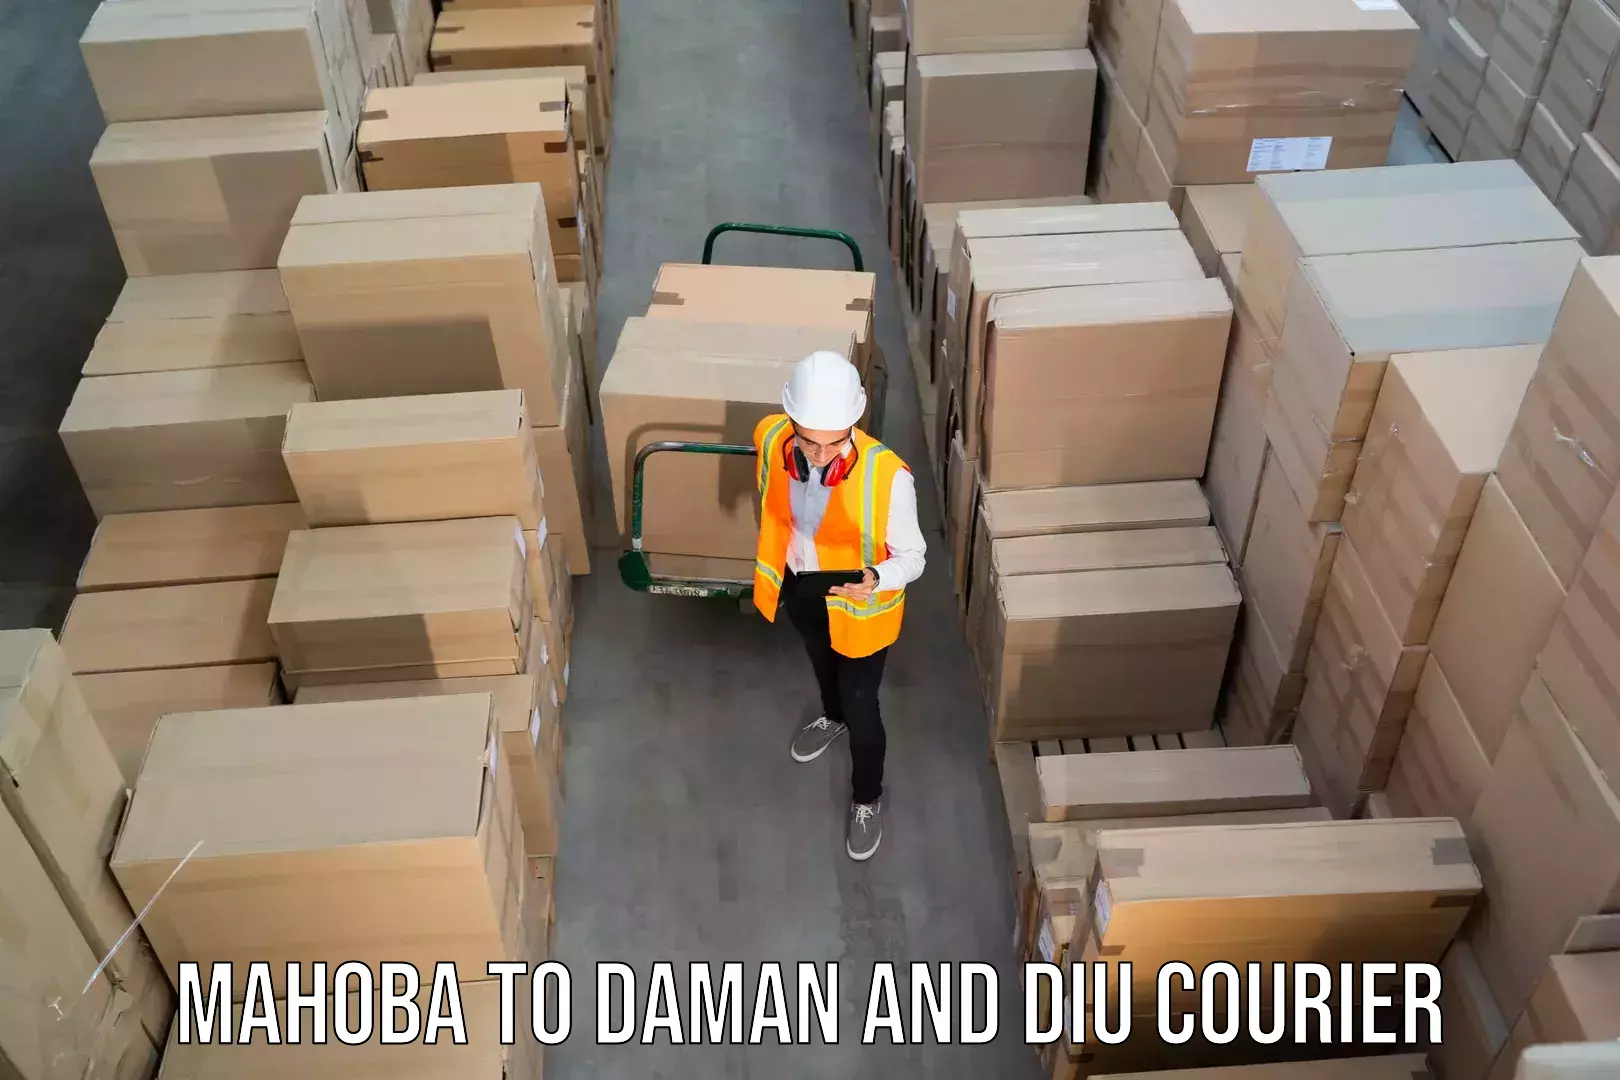 Efficient parcel service Mahoba to Diu